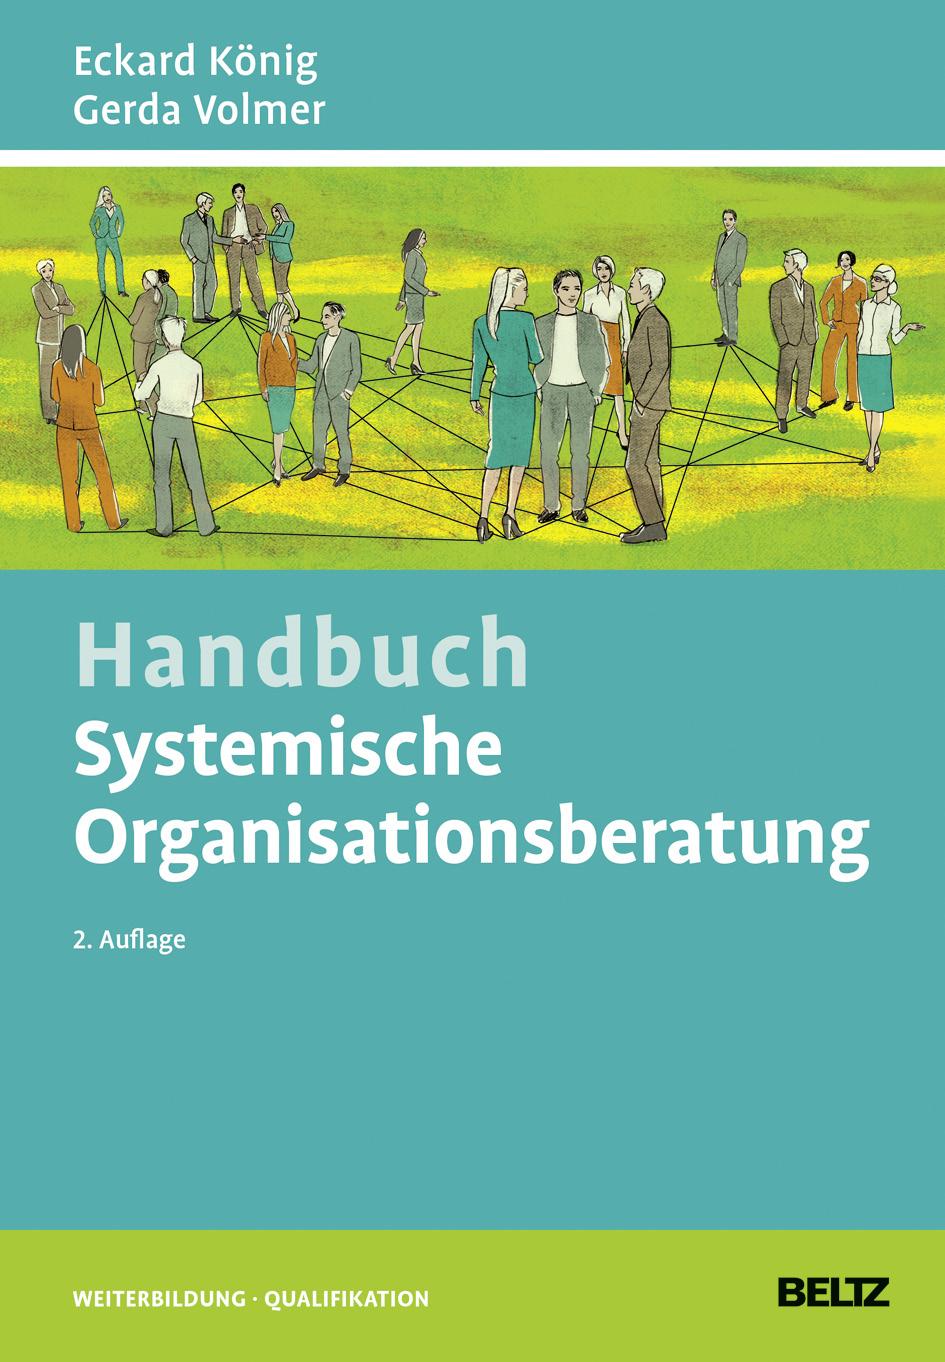 Weinheim / Basel: Beltz ISBN: 978-3-407-36549-1 König, Eckard / Volmer, Gerda (2016): Einfühung in das systemische Denken und Handeln 1. Auflage.